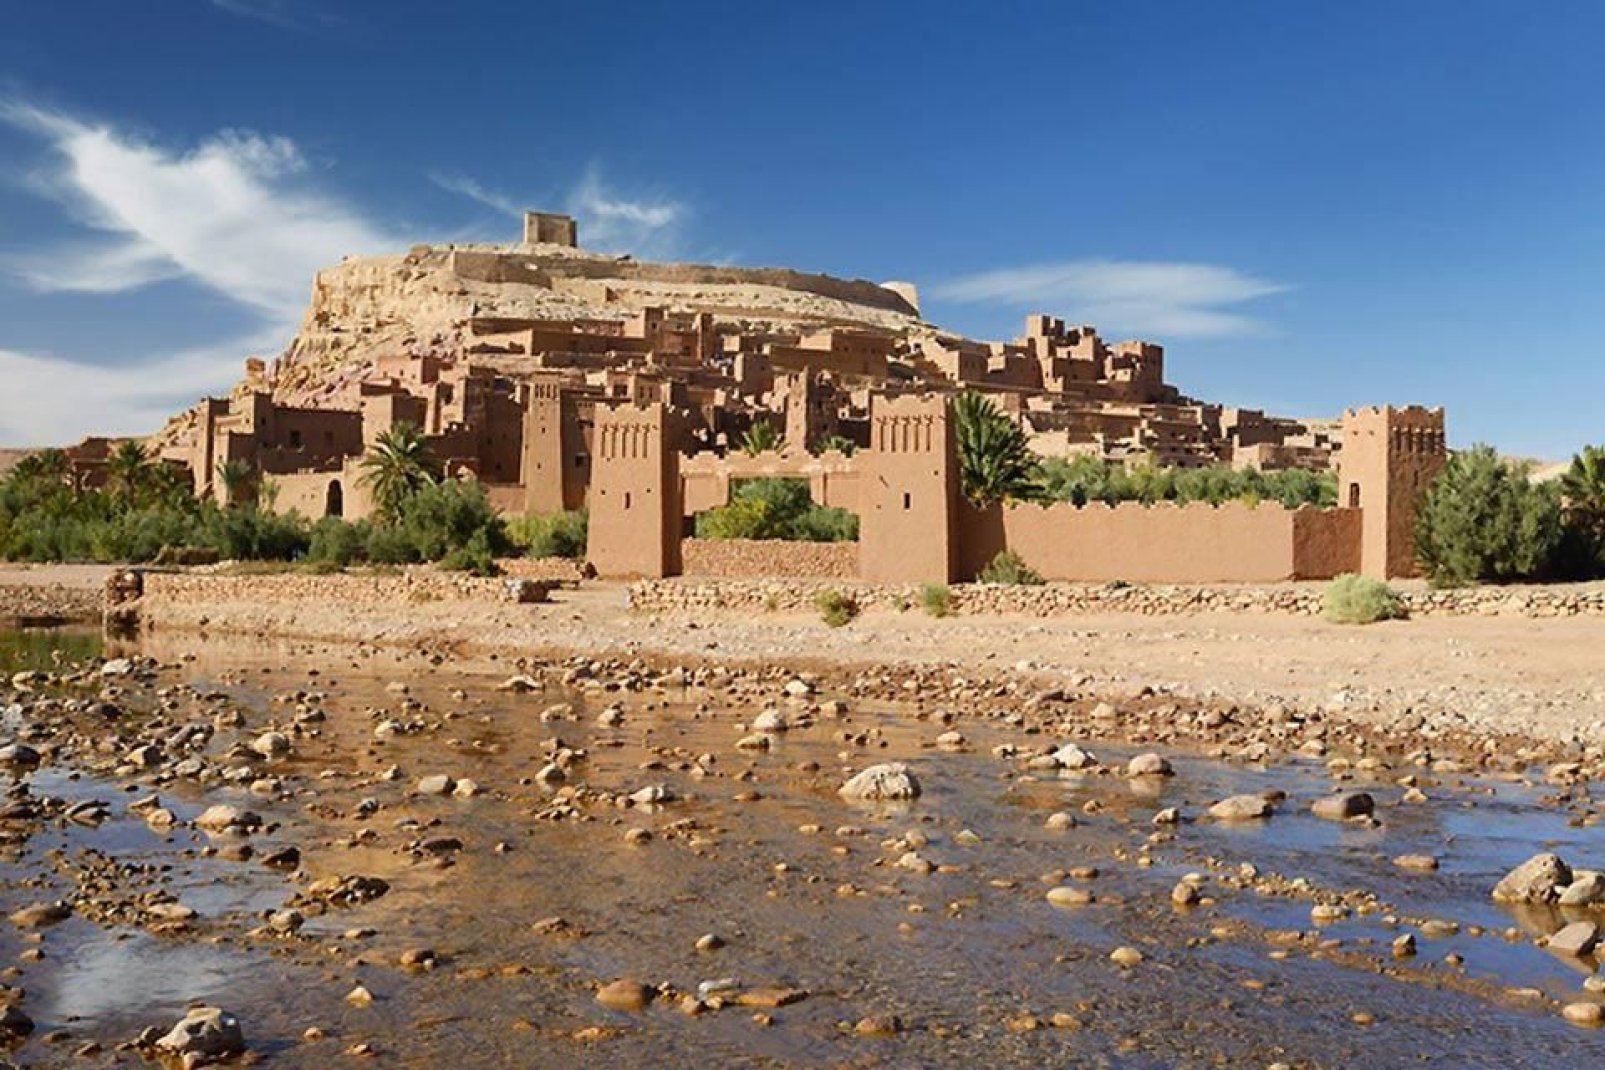 Als Etappenstadt vor der Wüste wartet Ouarzazate mit keinen allzu interessanten Sehenswürdigkeiten auf. Die Umgebung hat da schon mehr zu bieten.